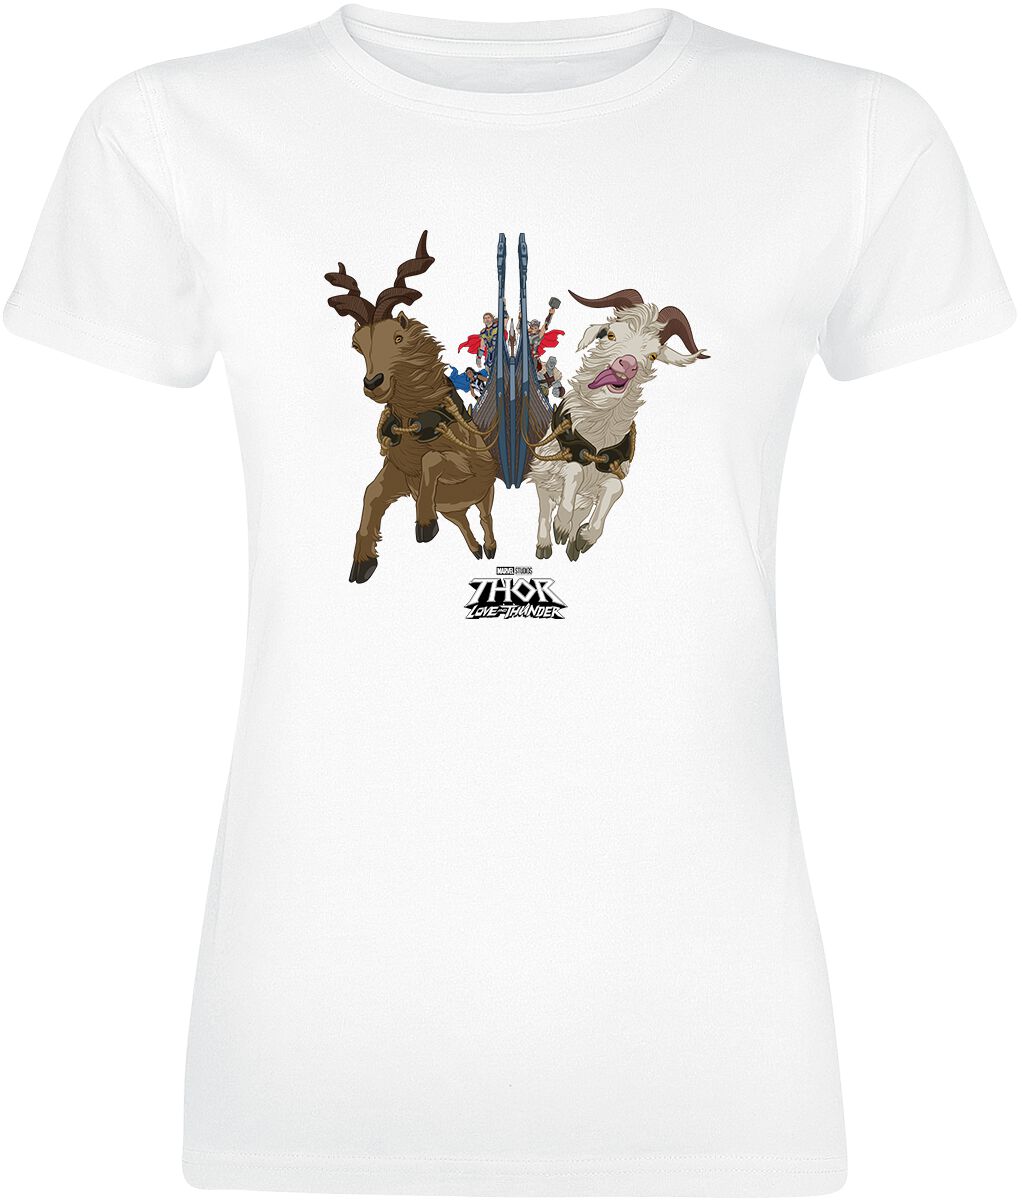 Thor Love And Thunder - Viking Ship T-Shirt white